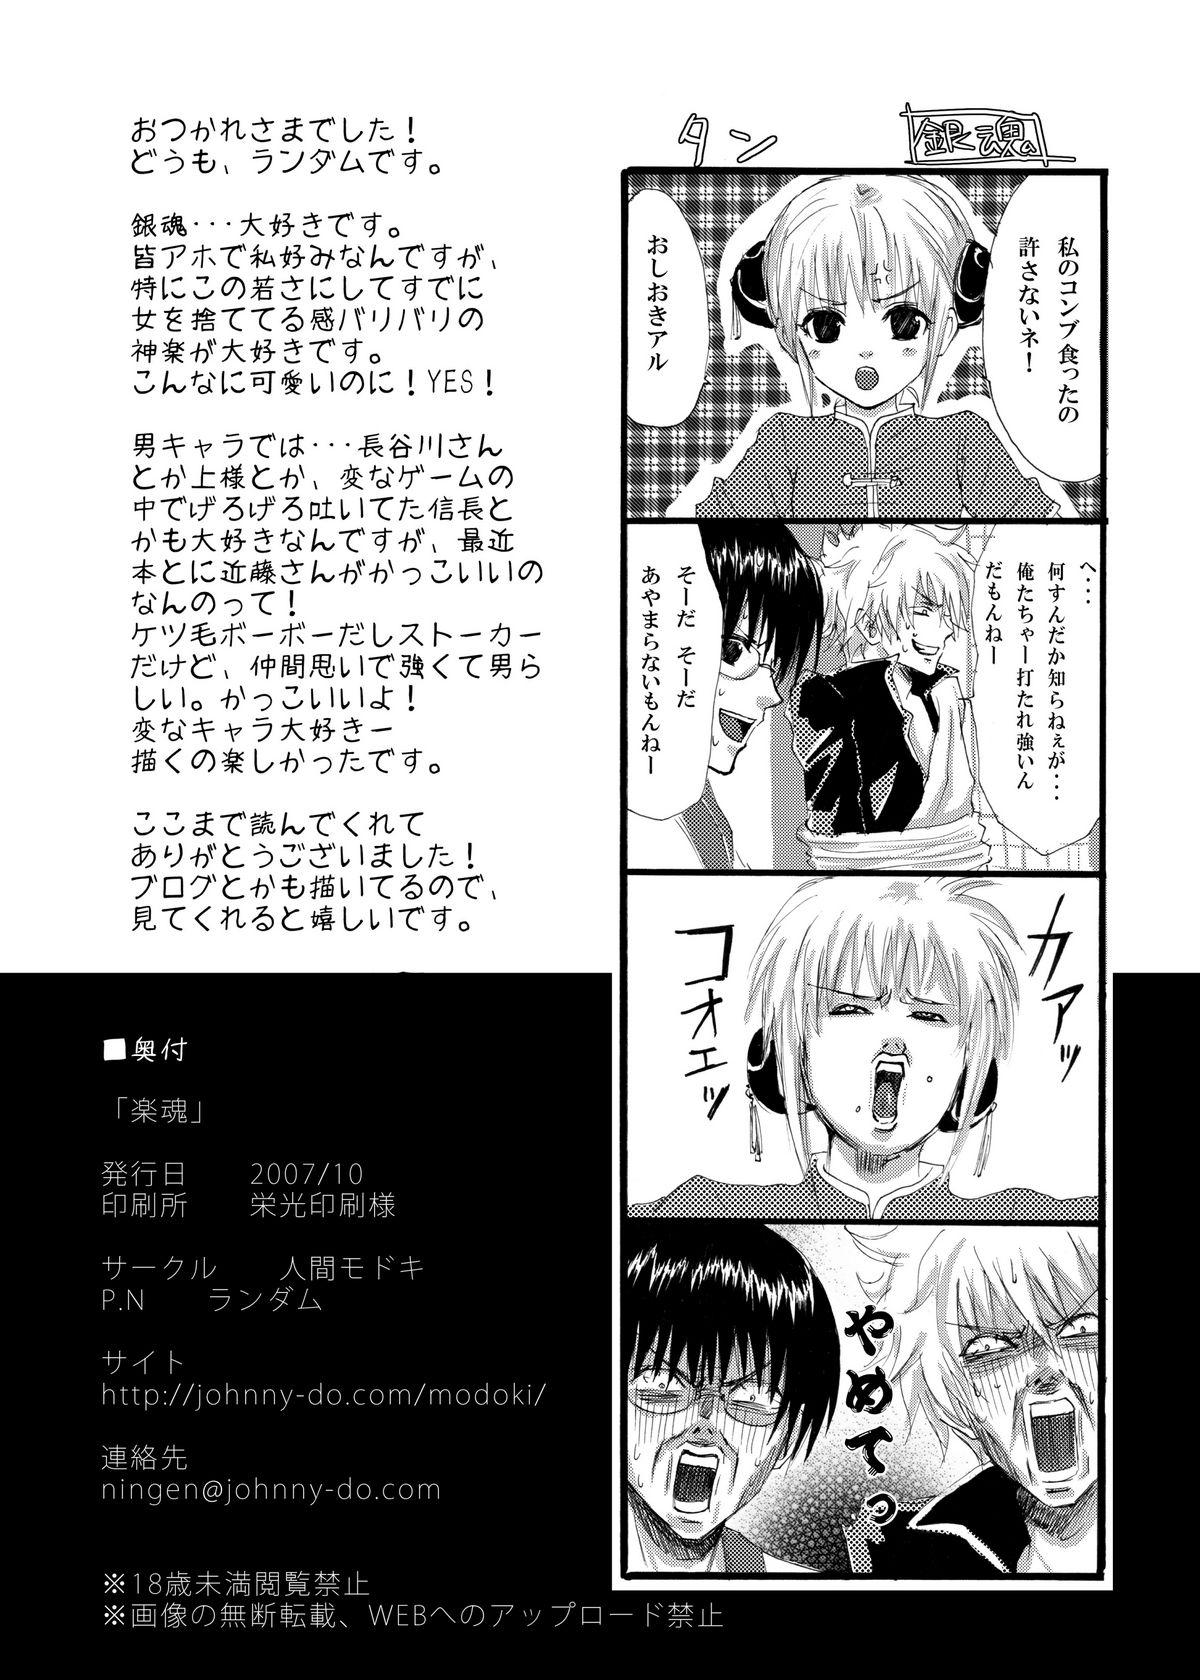 Furry Rakutama - Gintama Step Brother - Page 25